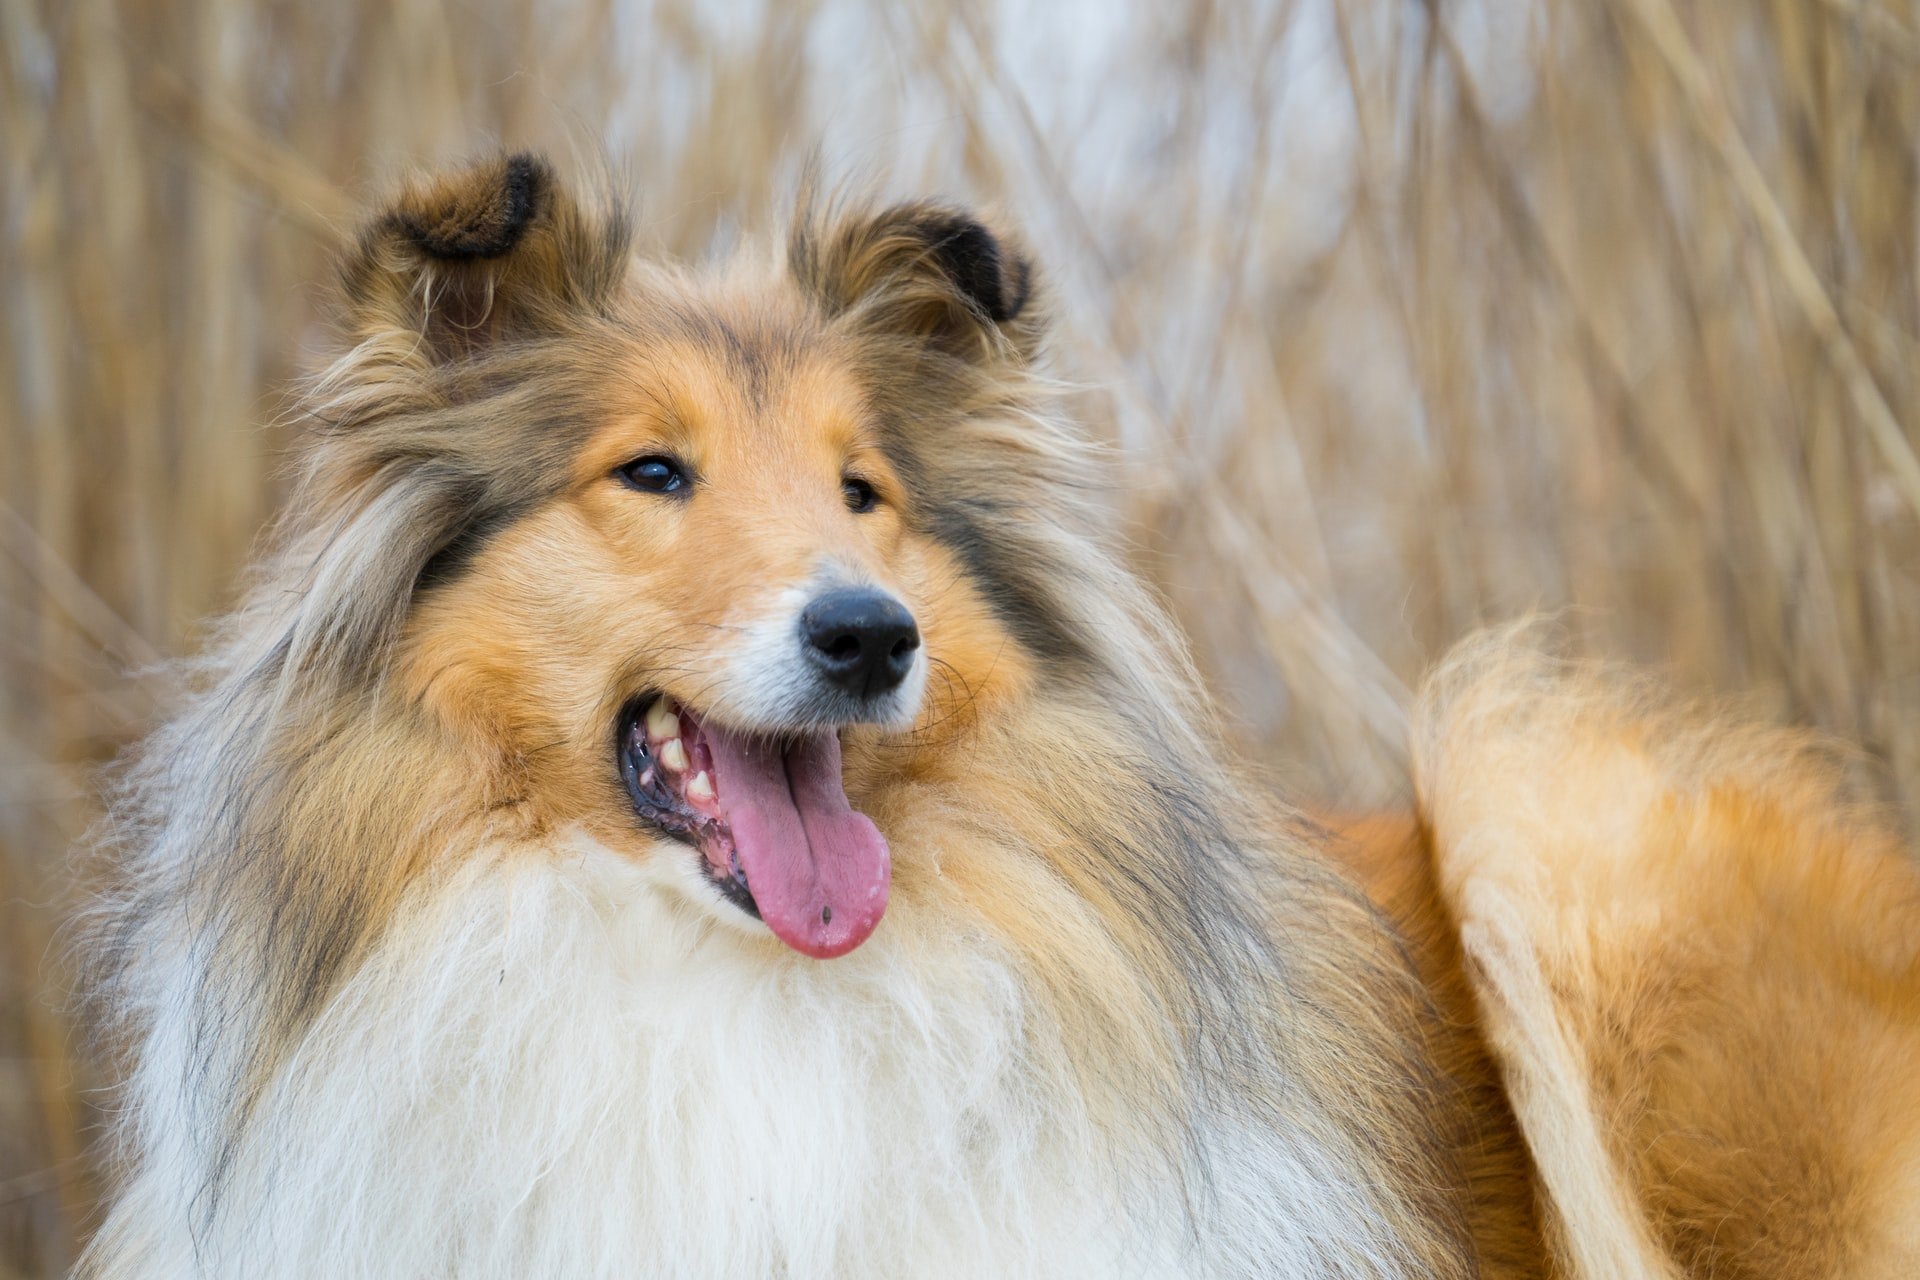 Cães com nariz comprido: conheça 4 raças - Mega Curioso